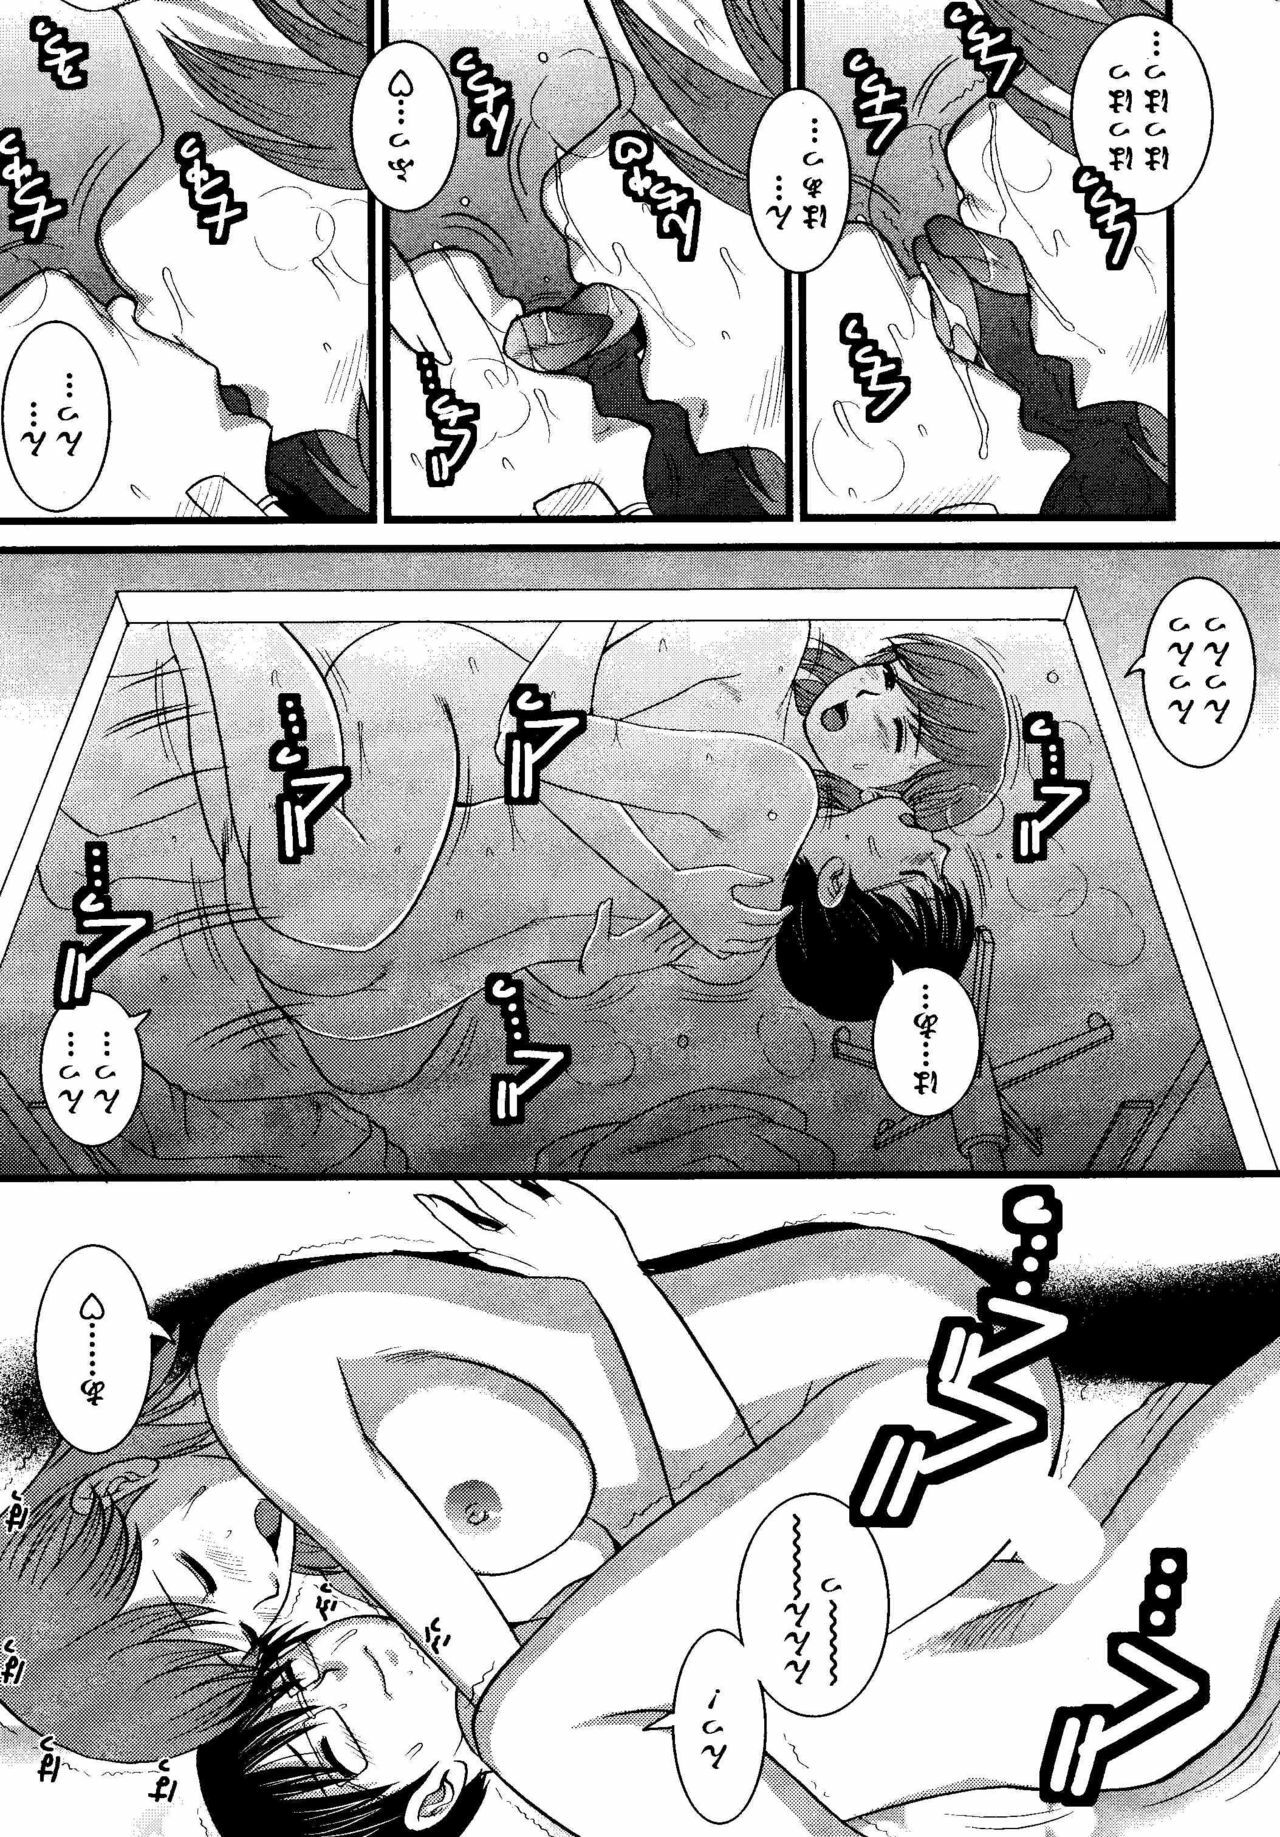 Haken no Muuko-san 8 [Saigado] page 17 full